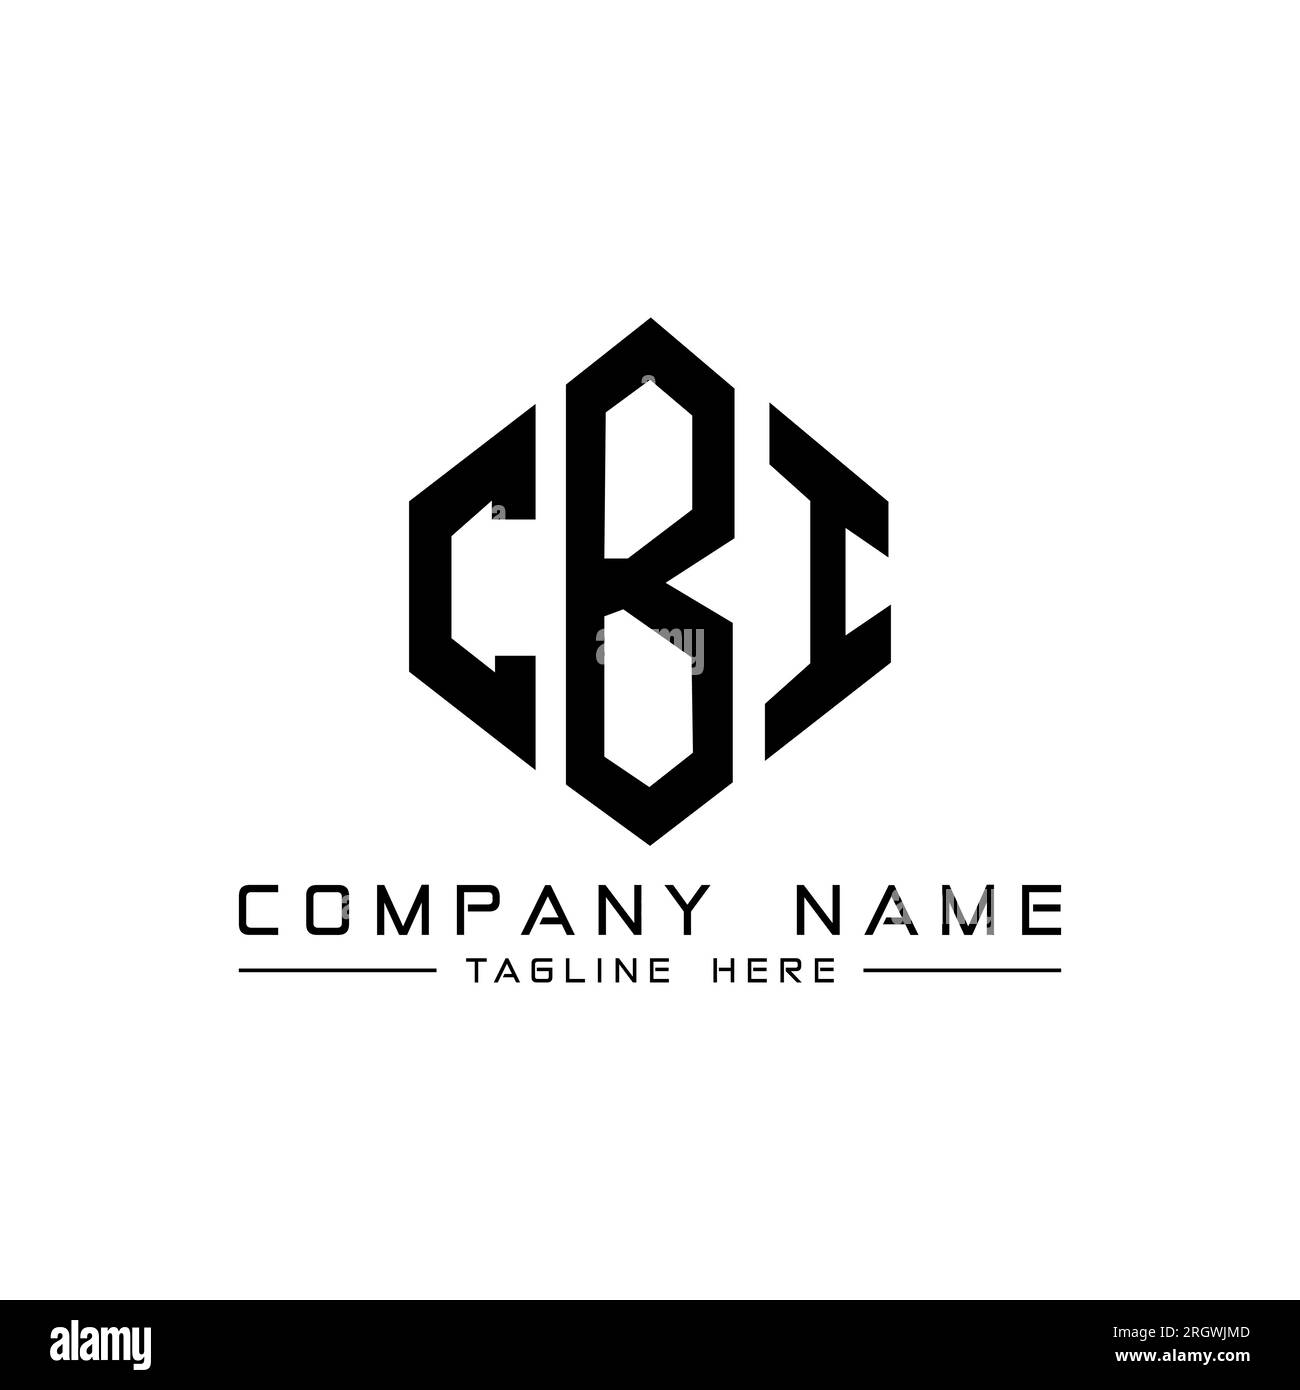 Premium Vector | Cbi letter logo design-cheohanoi.vn